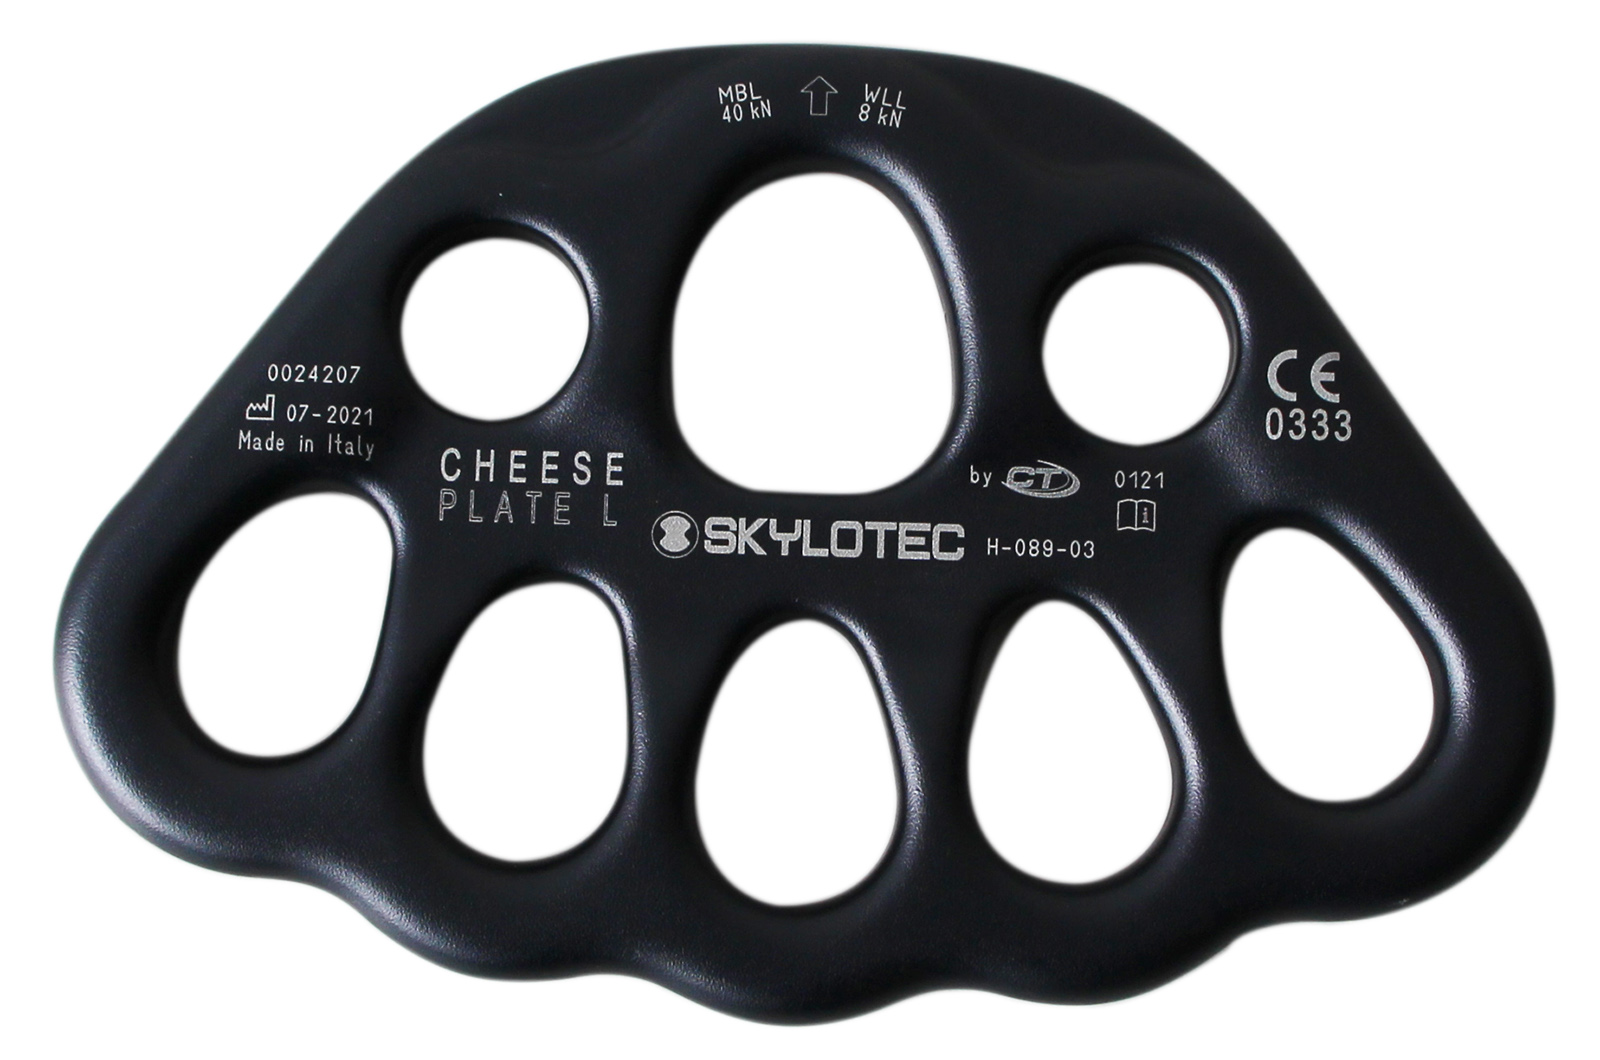 Skylotec Rigging Plate Midi